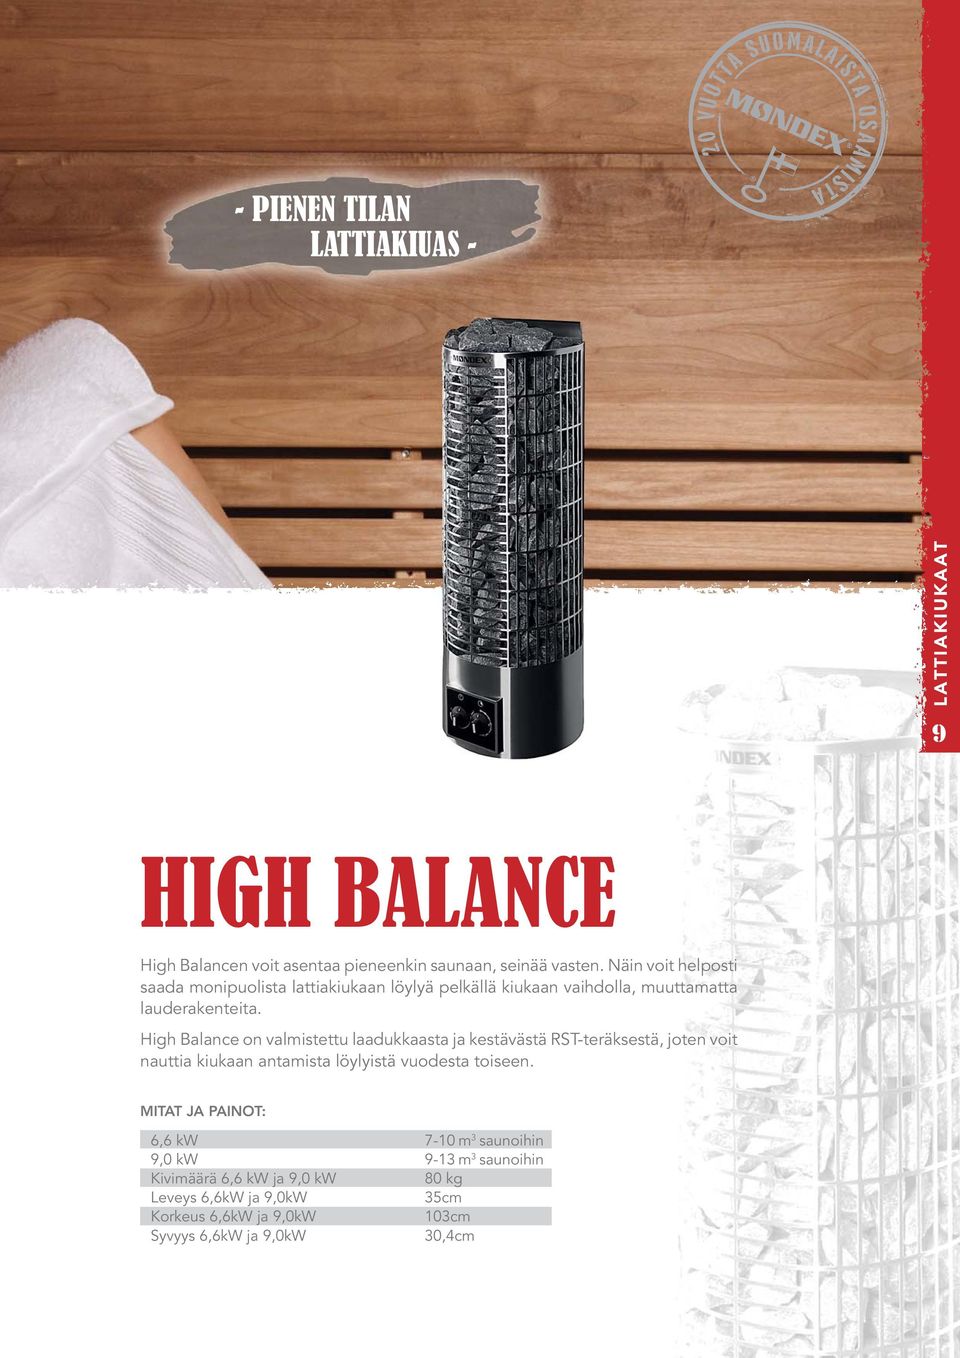 High Balance on valmistettu laadukkaasta ja kestävästä RST-teräksestä, joten voit nauttia kiukaan antamista löylyistä vuodesta toiseen.